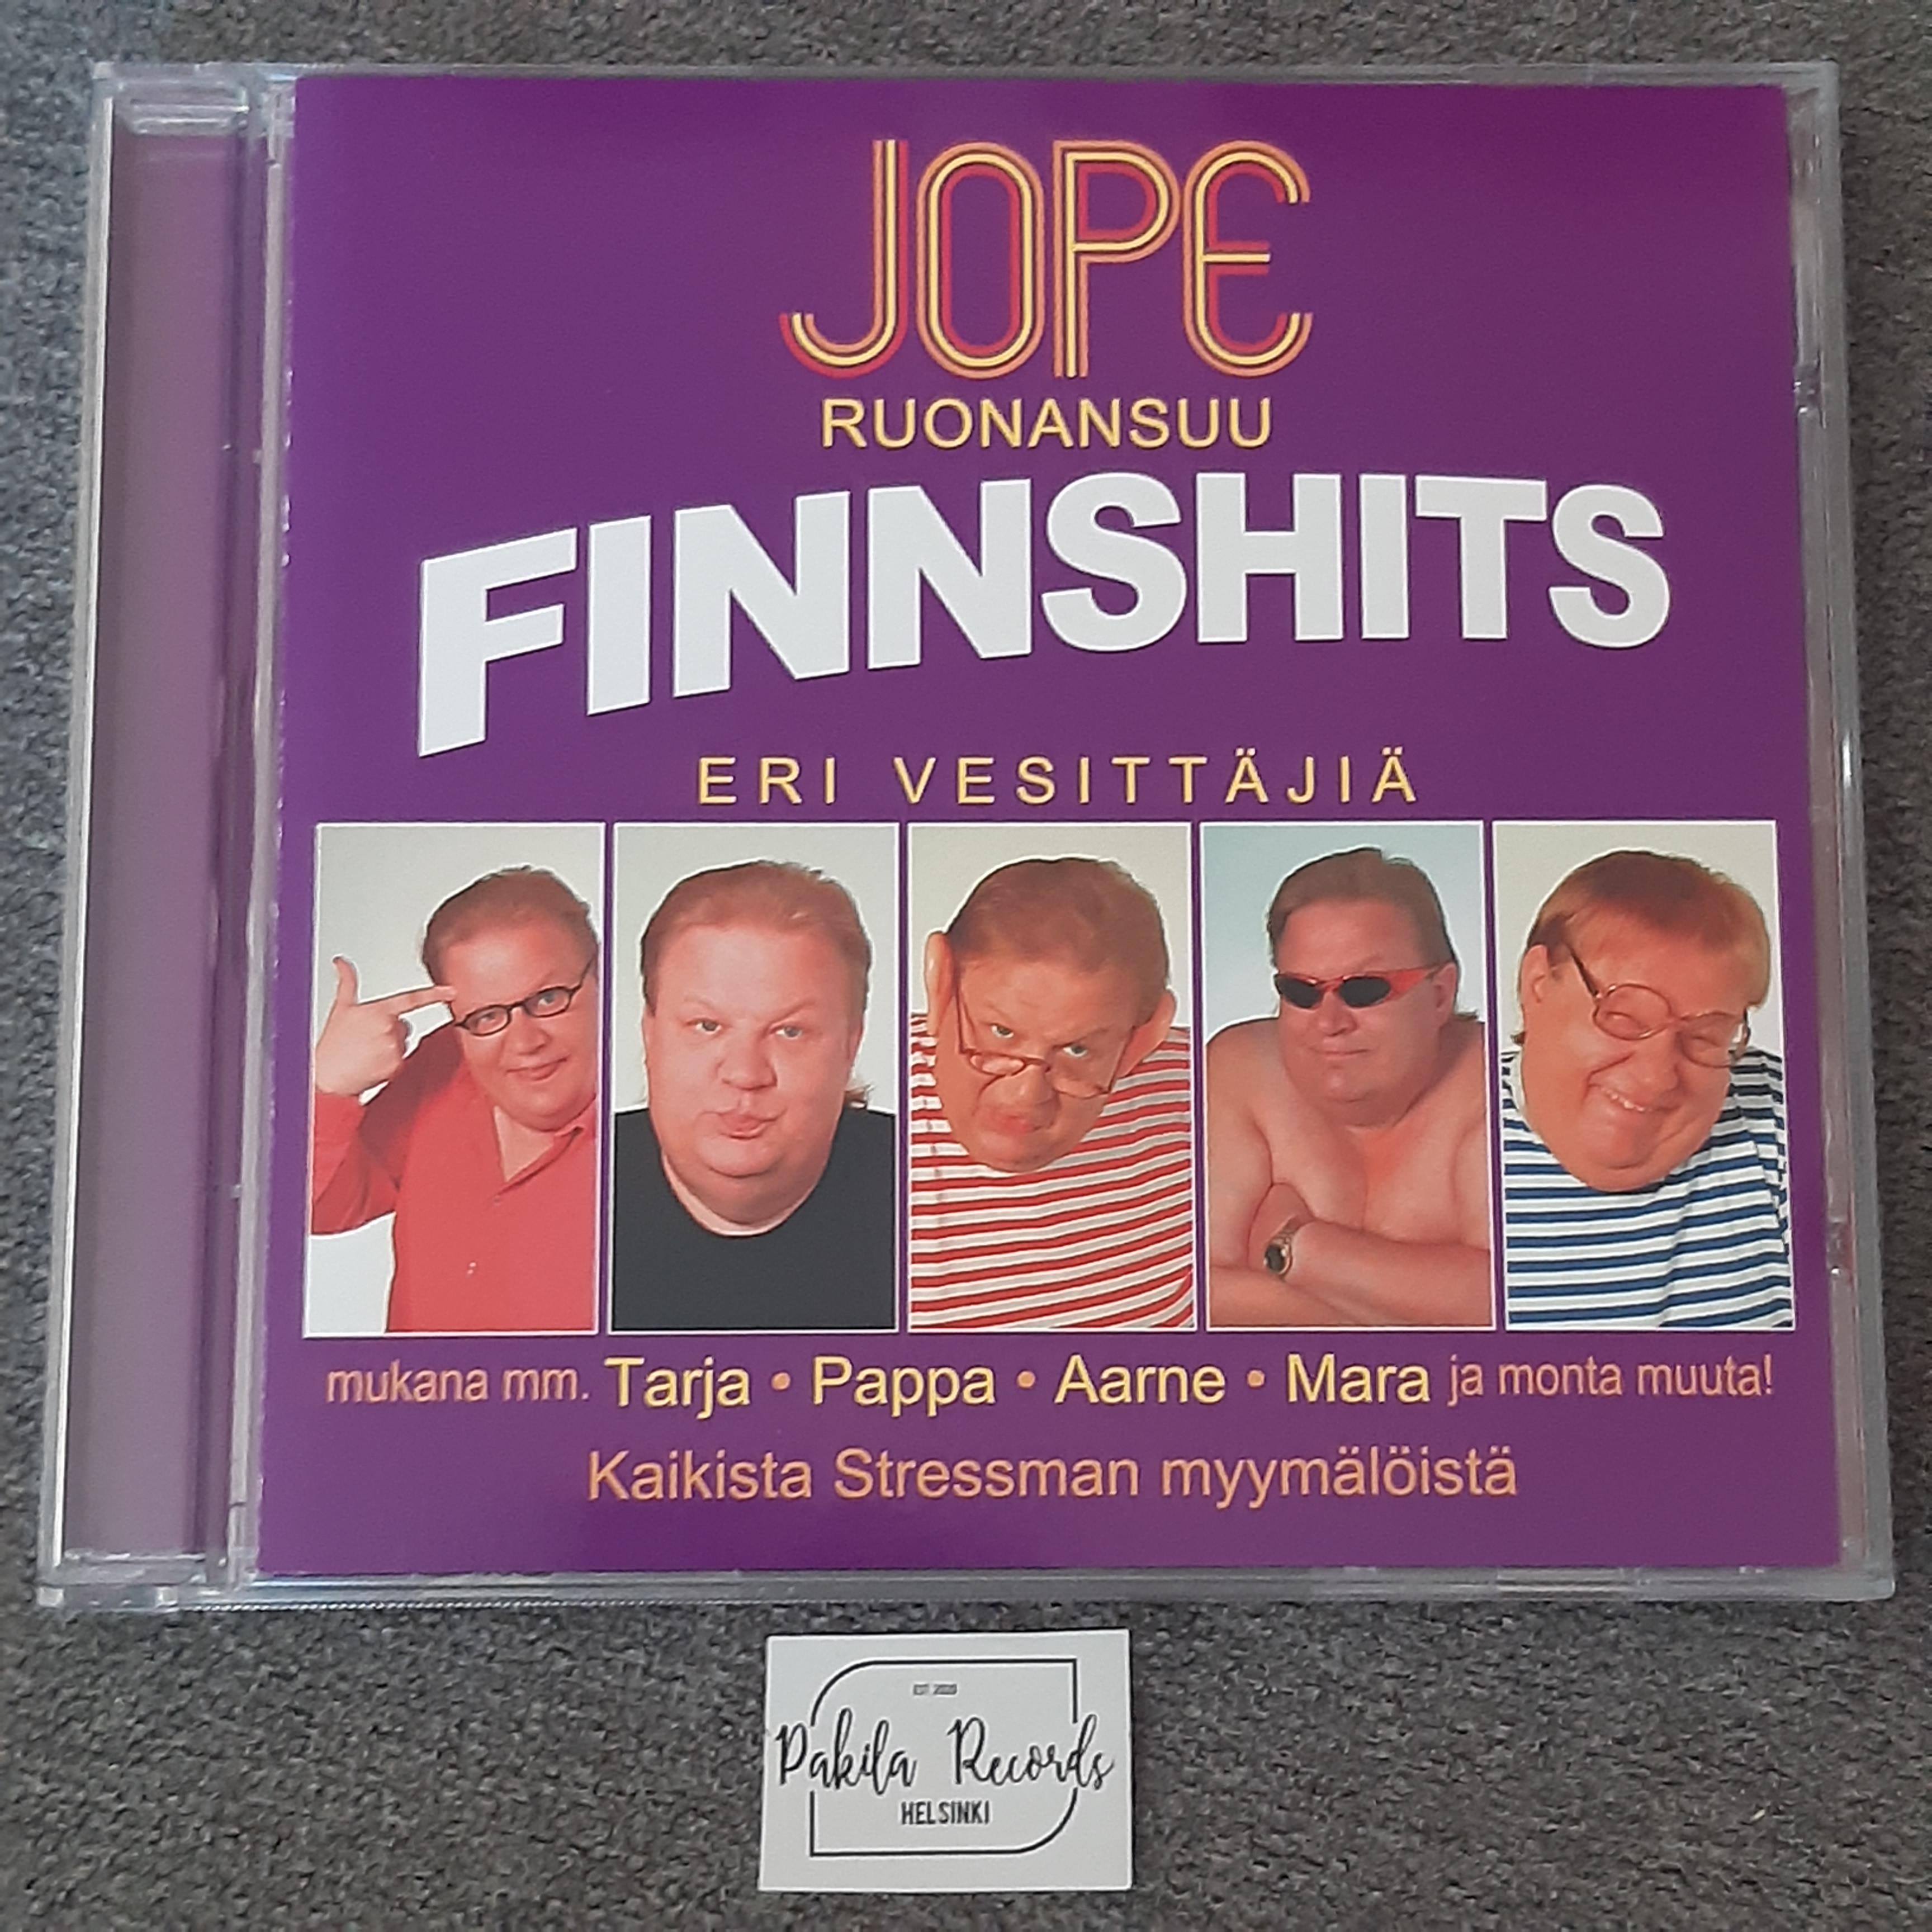 Jope Ruonansuu - Finnshits - CD (käytetty)